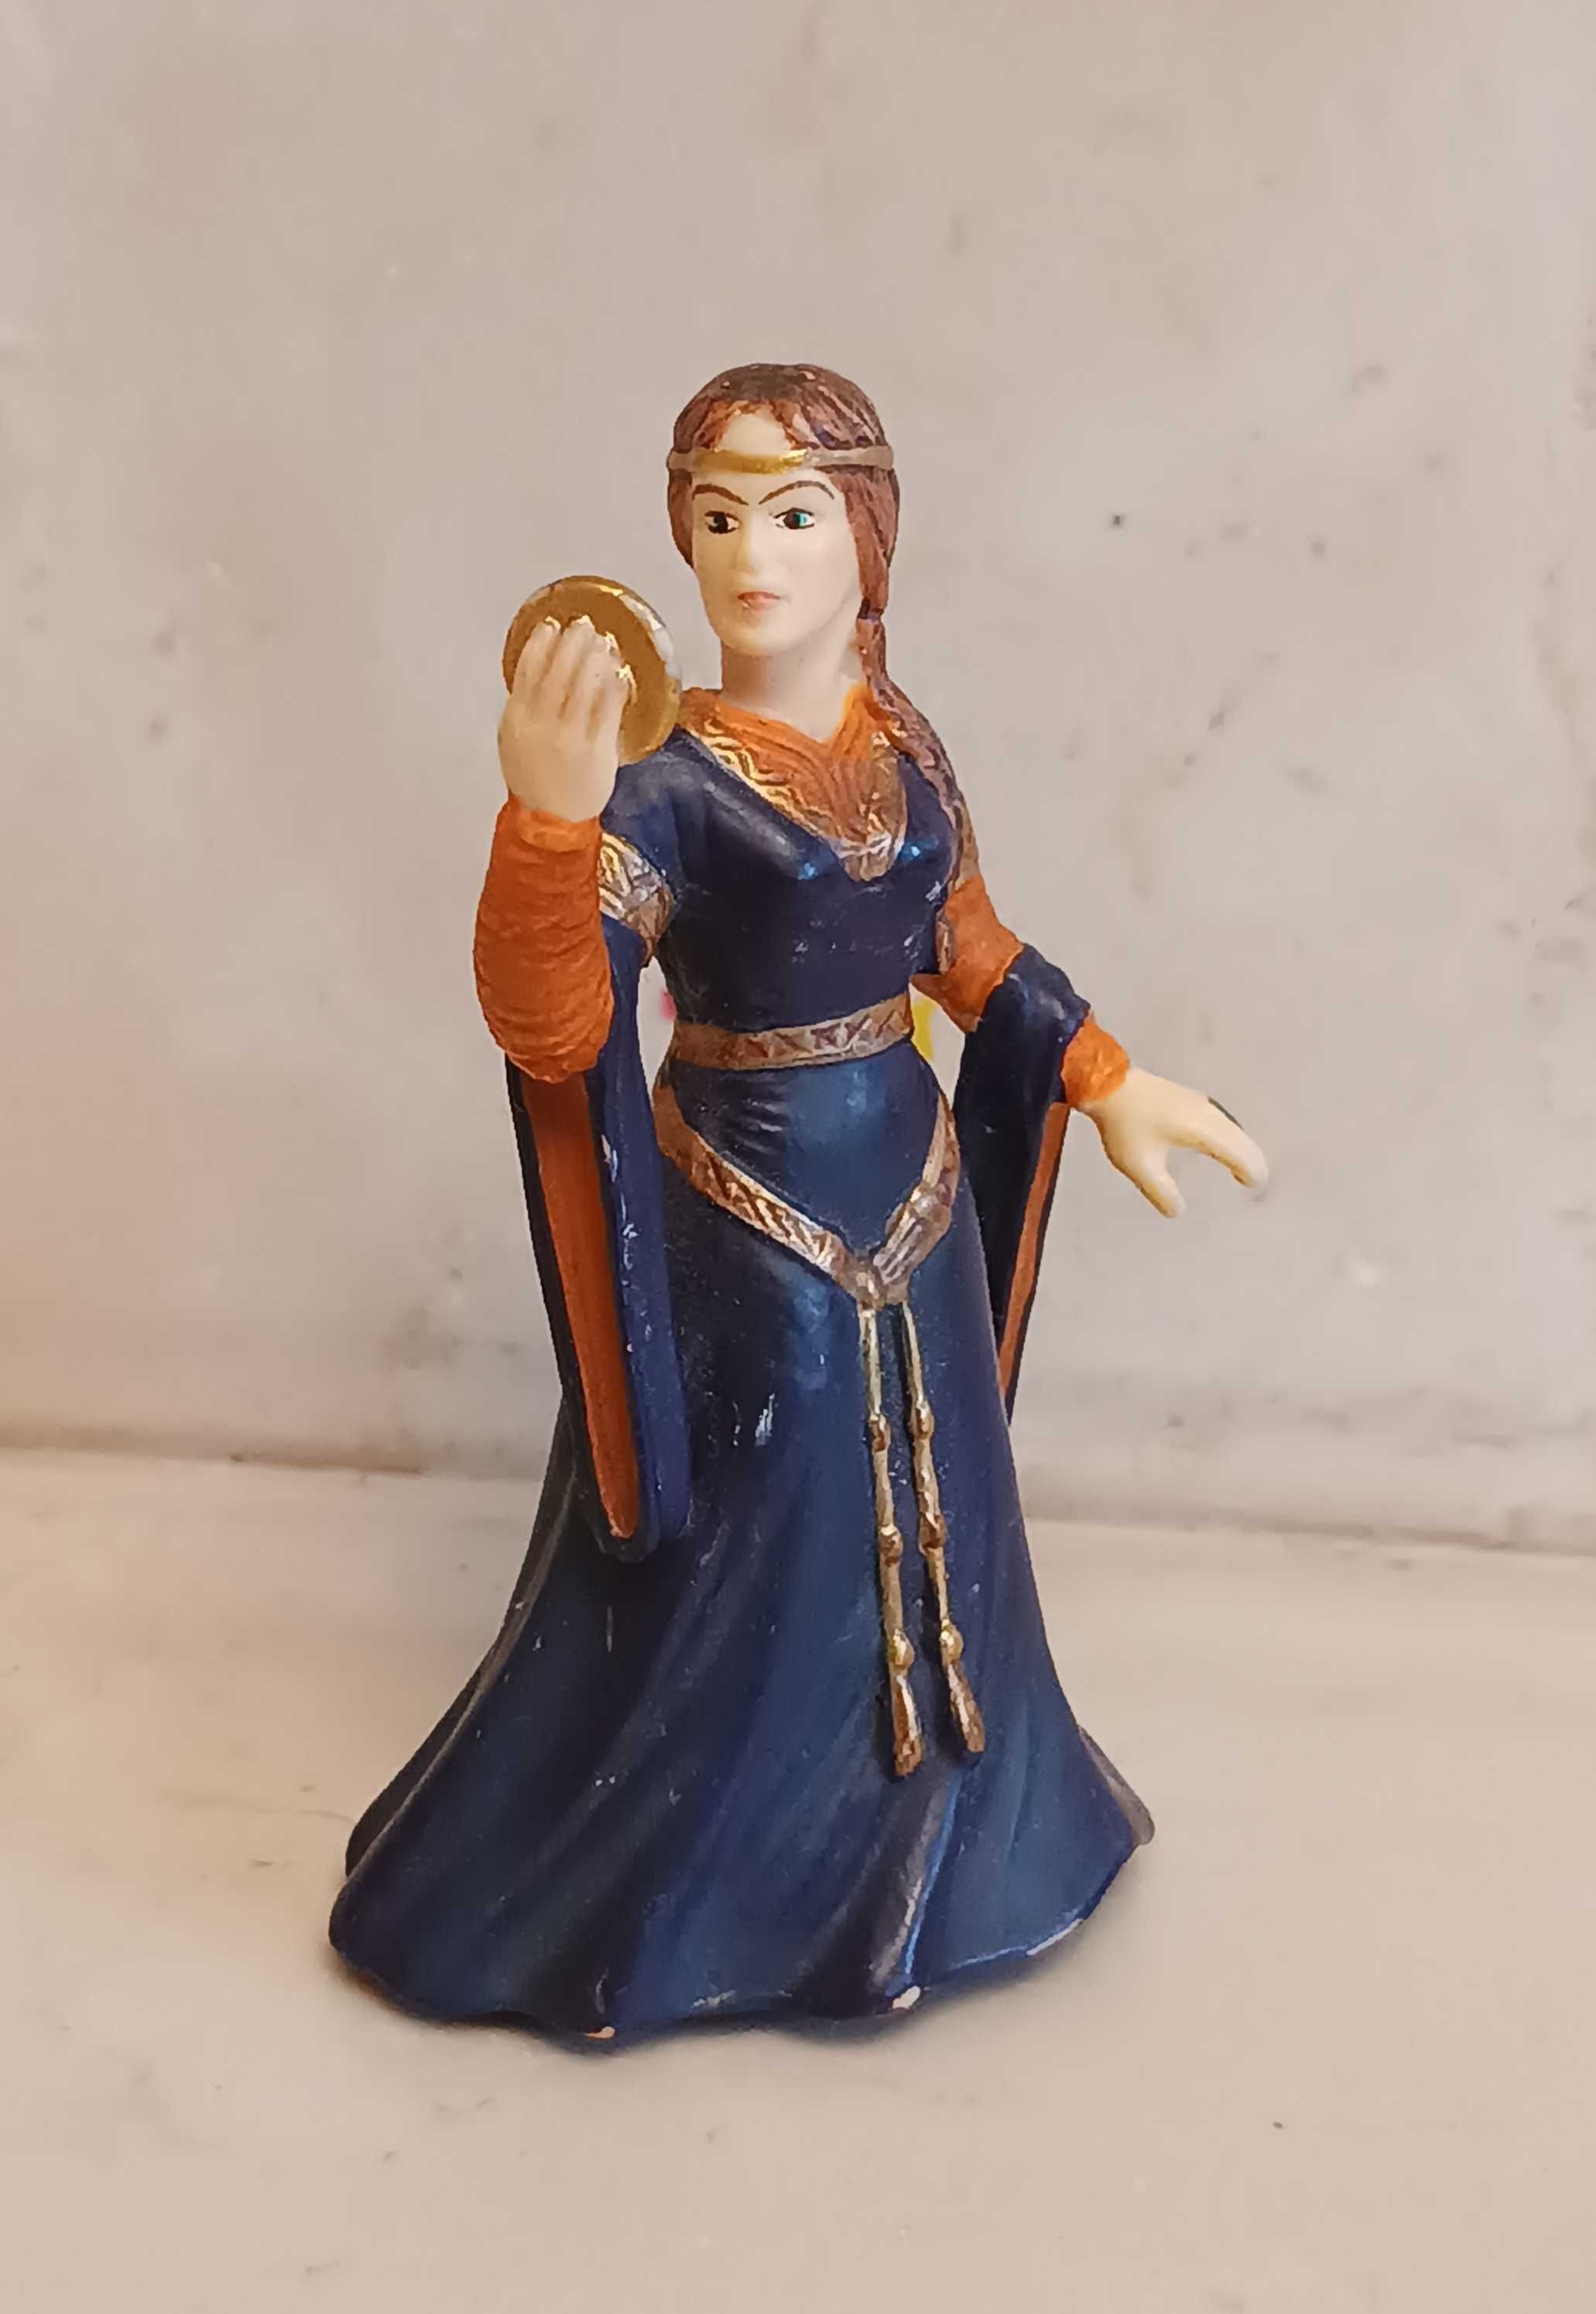 Schleich Królewna z lustrem 70026 figurka zabawka księżniczka królowa